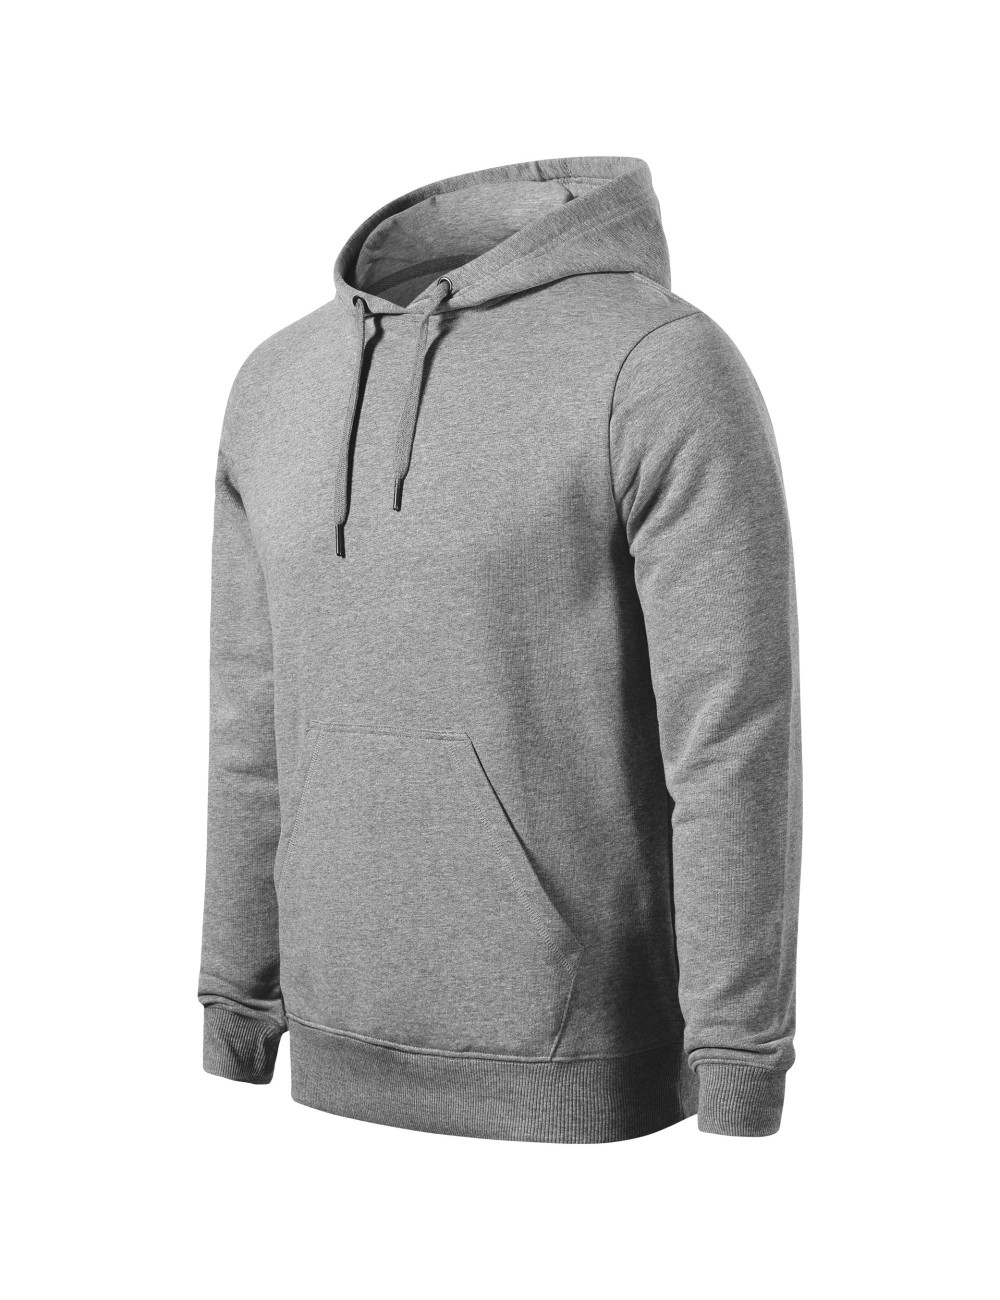 Men`s break sweatshirt (grs) 840 dark gray melange Adler Malfini®